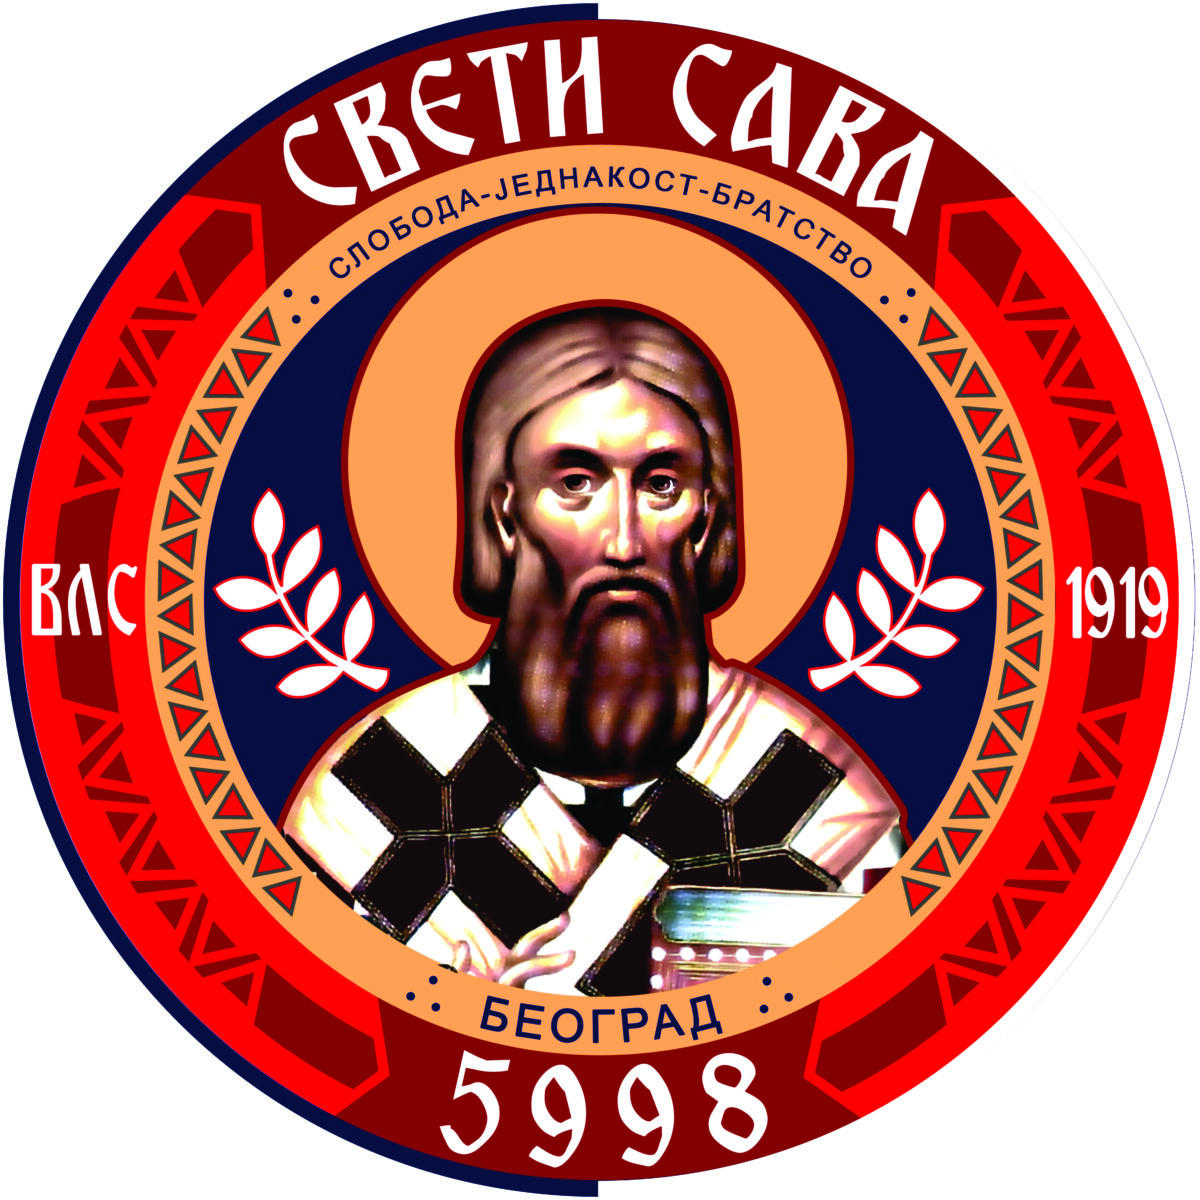 03-PL-Sveti-Sava_logo  